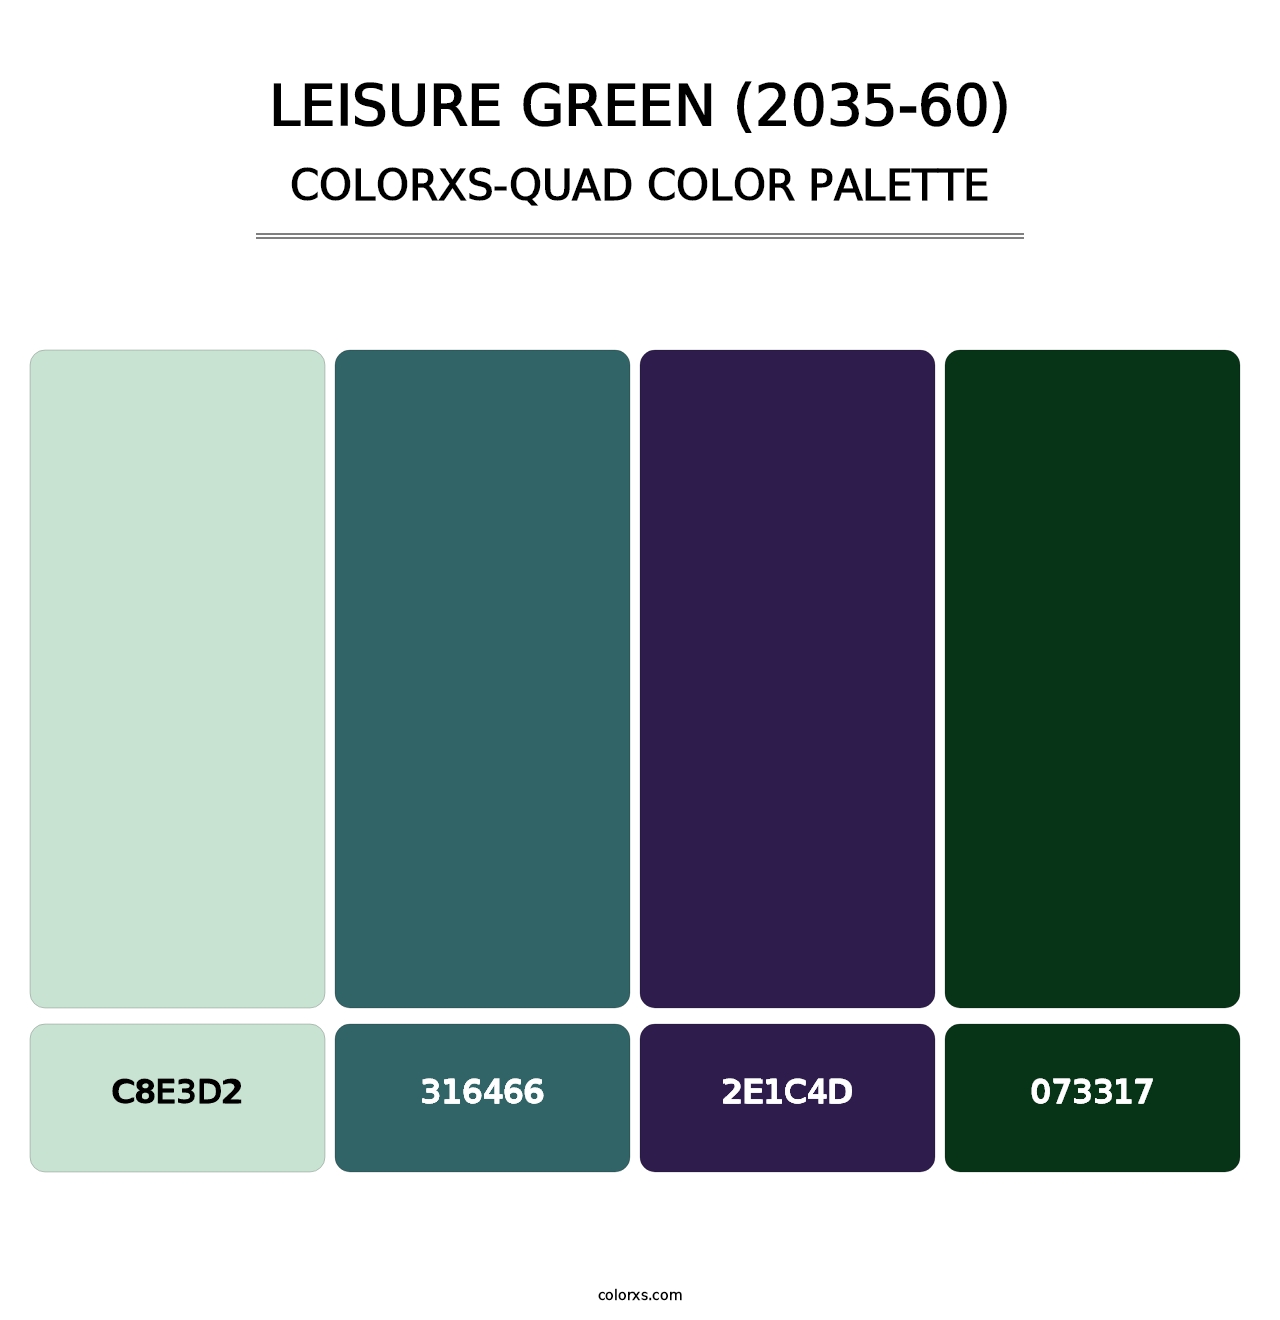 Leisure Green (2035-60) - Colorxs Quad Palette